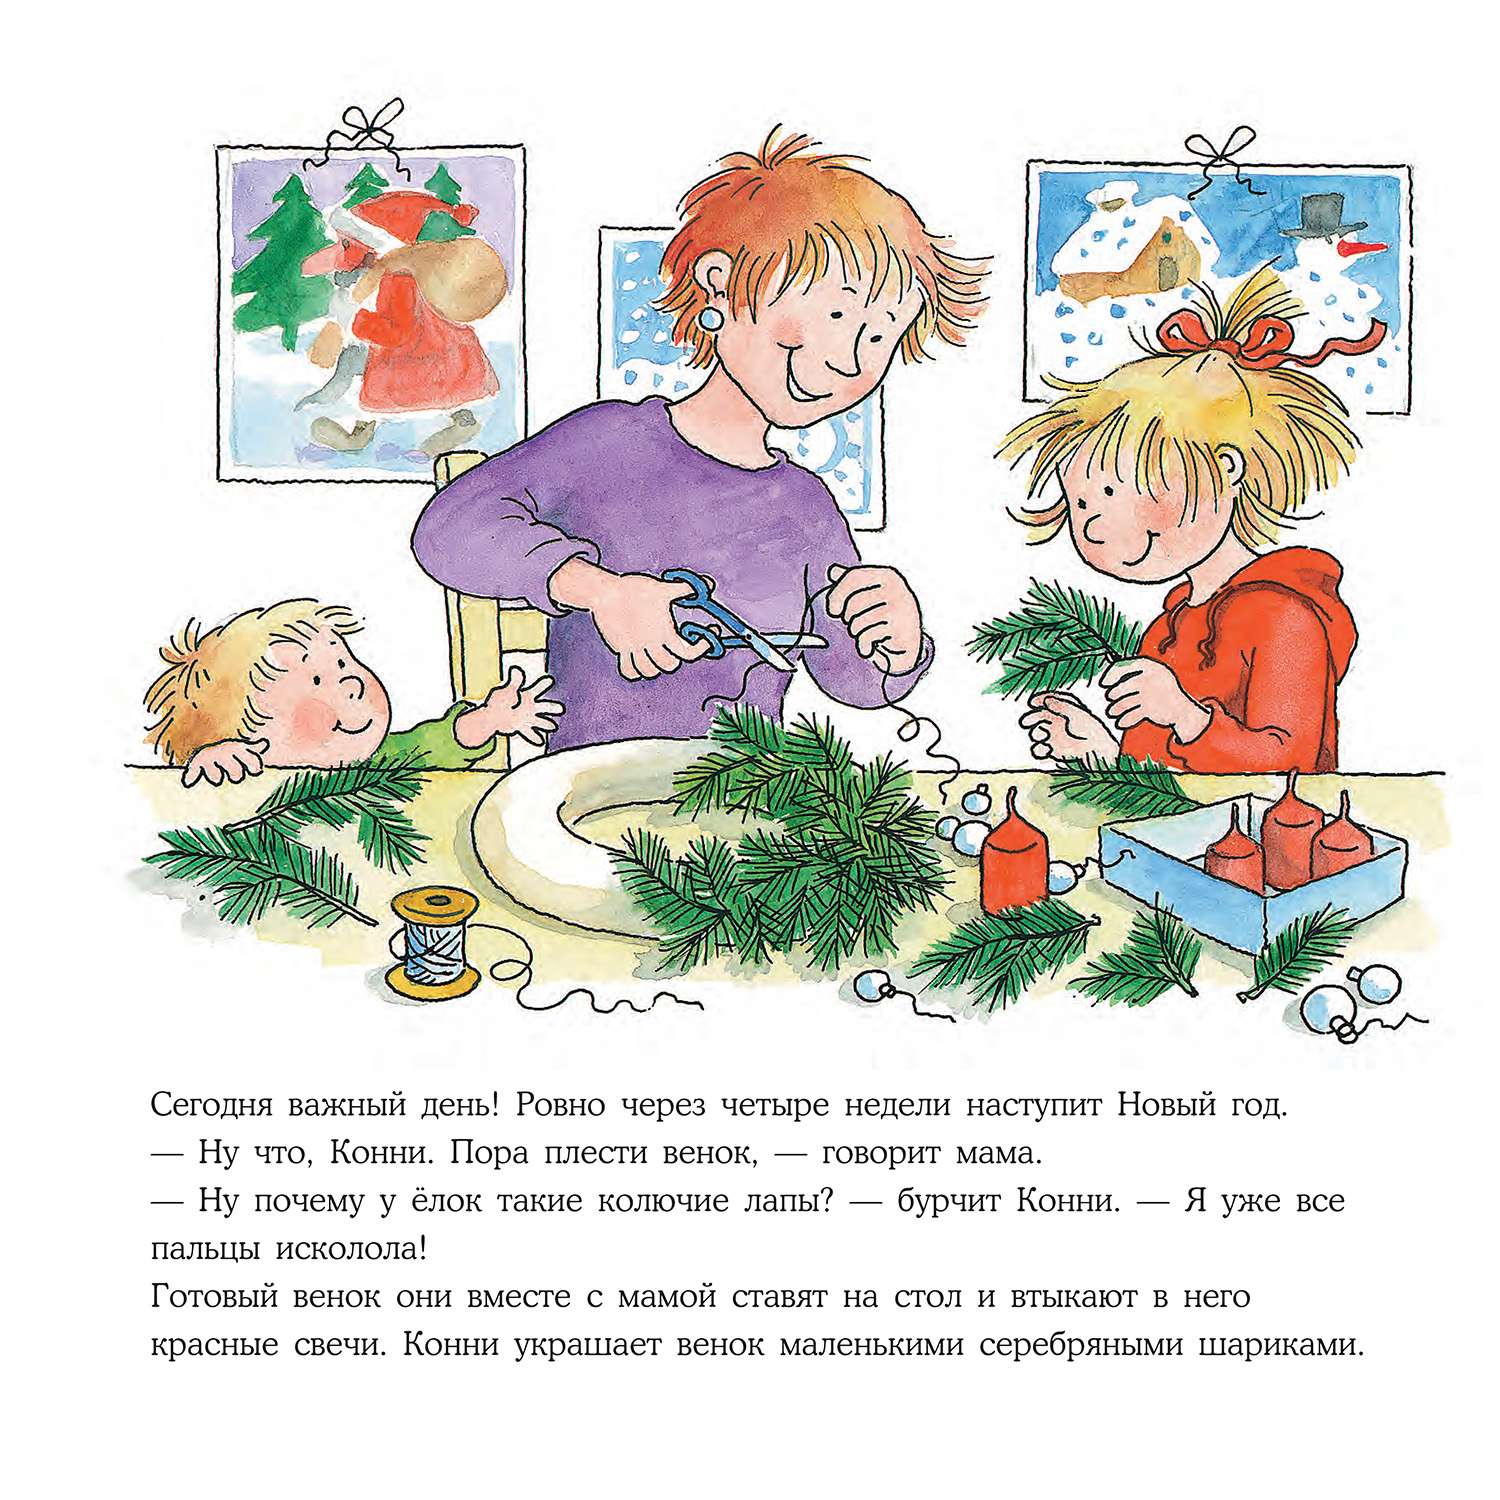 Книга Альпина. Дети Конни празднует Новый год - фото 10